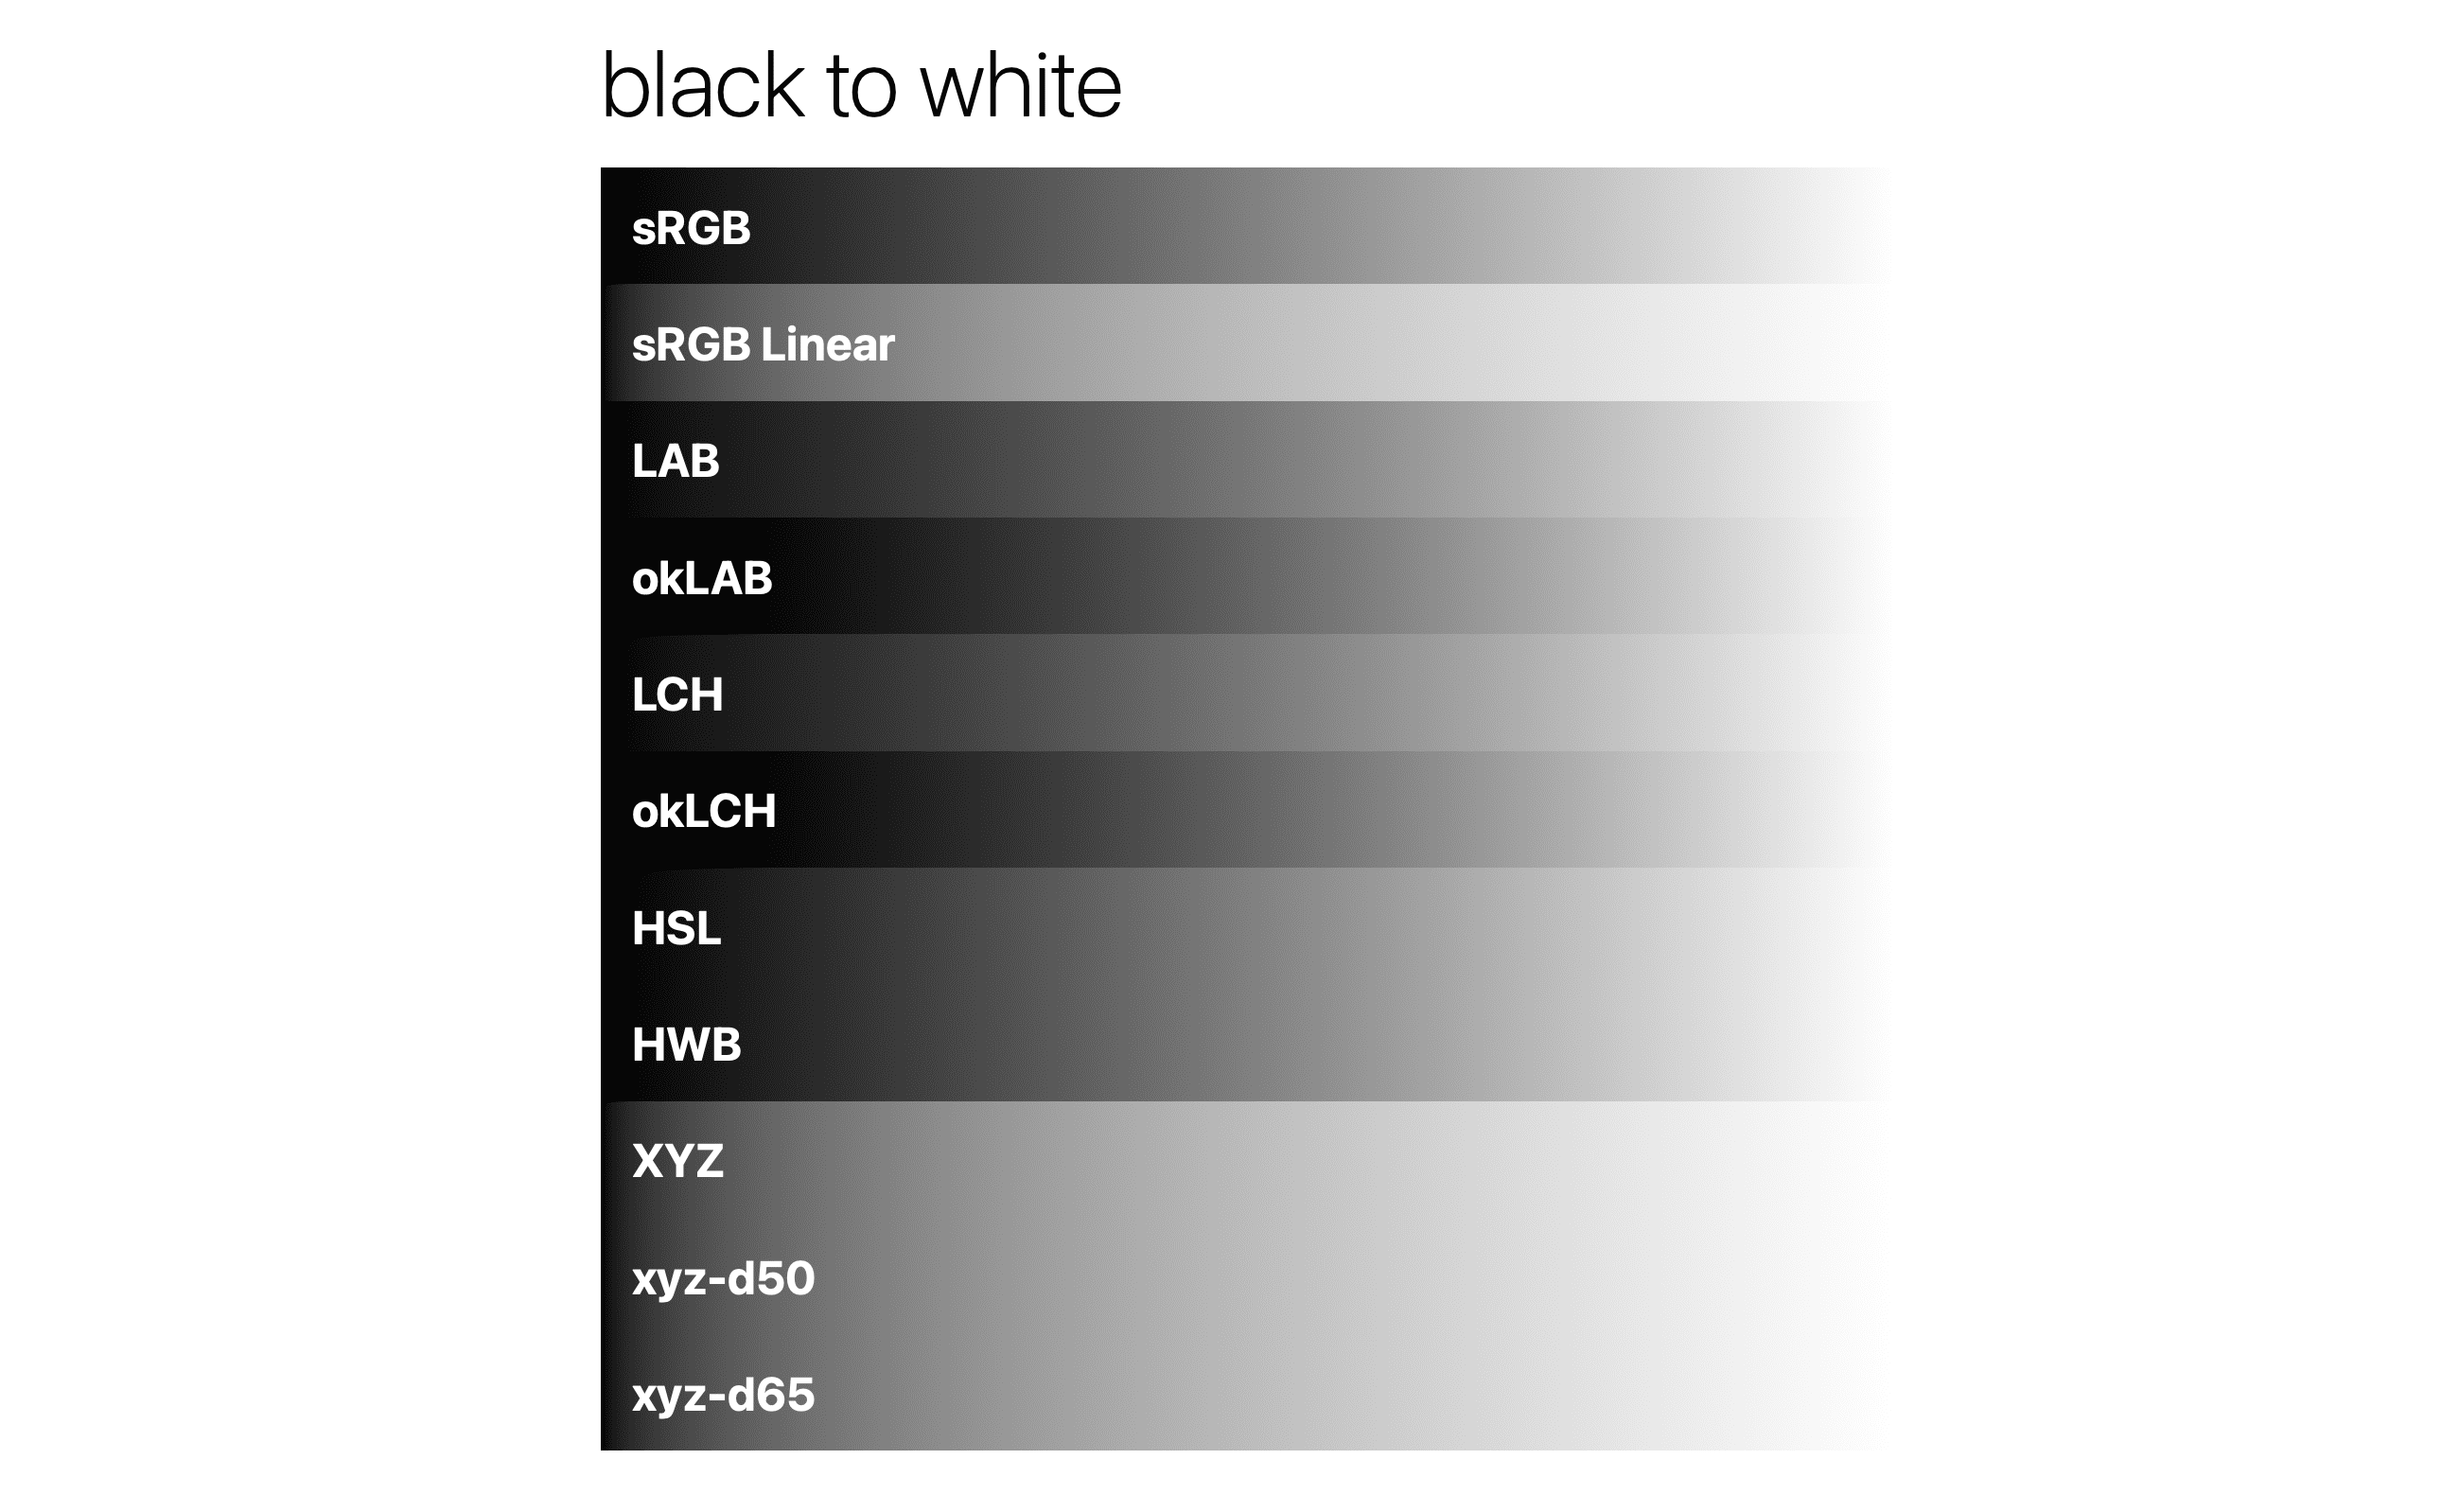 Chuyển màu từ đen sang trắng trong các hệ màu khác nhau.